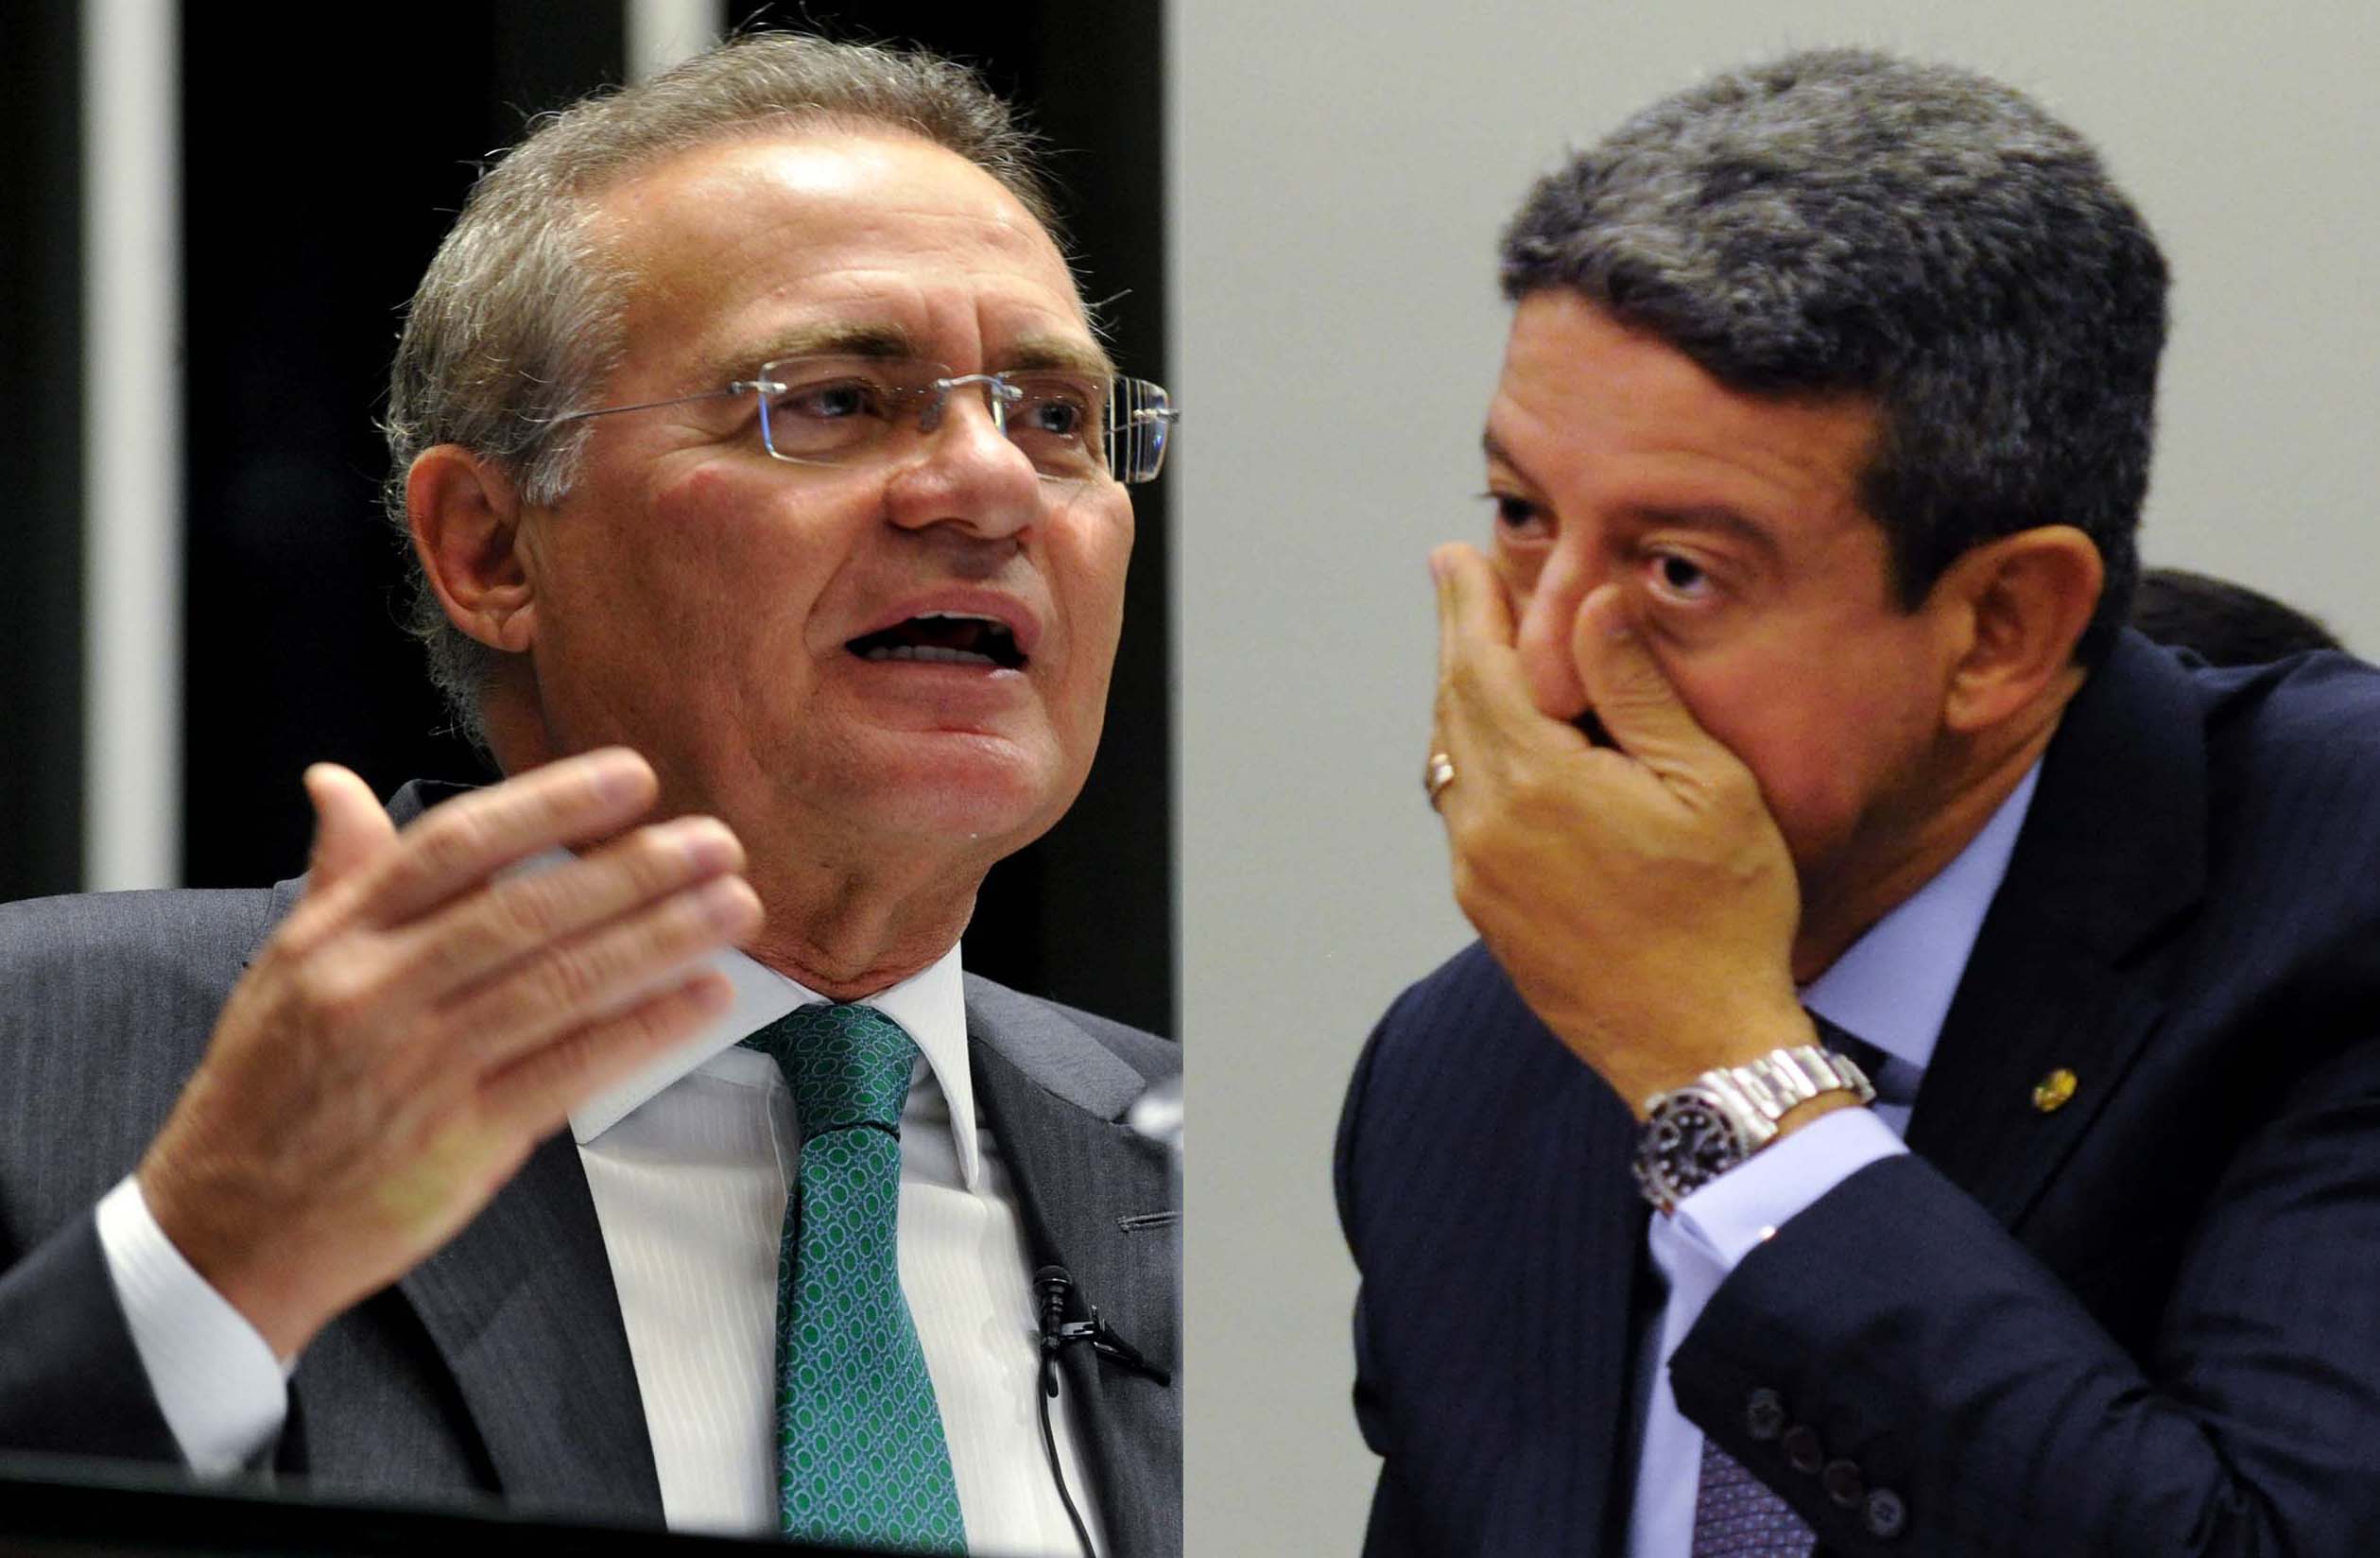 Senator Renan Calheiros (MDB-AL) and federal deputy Arthur Lira (PP-AL) Read more at: https://veja.abril.com.br/coluna/radar/rivais-na-eleicao-em-alagoas- lira-and-renan-attack-in-the-nets/